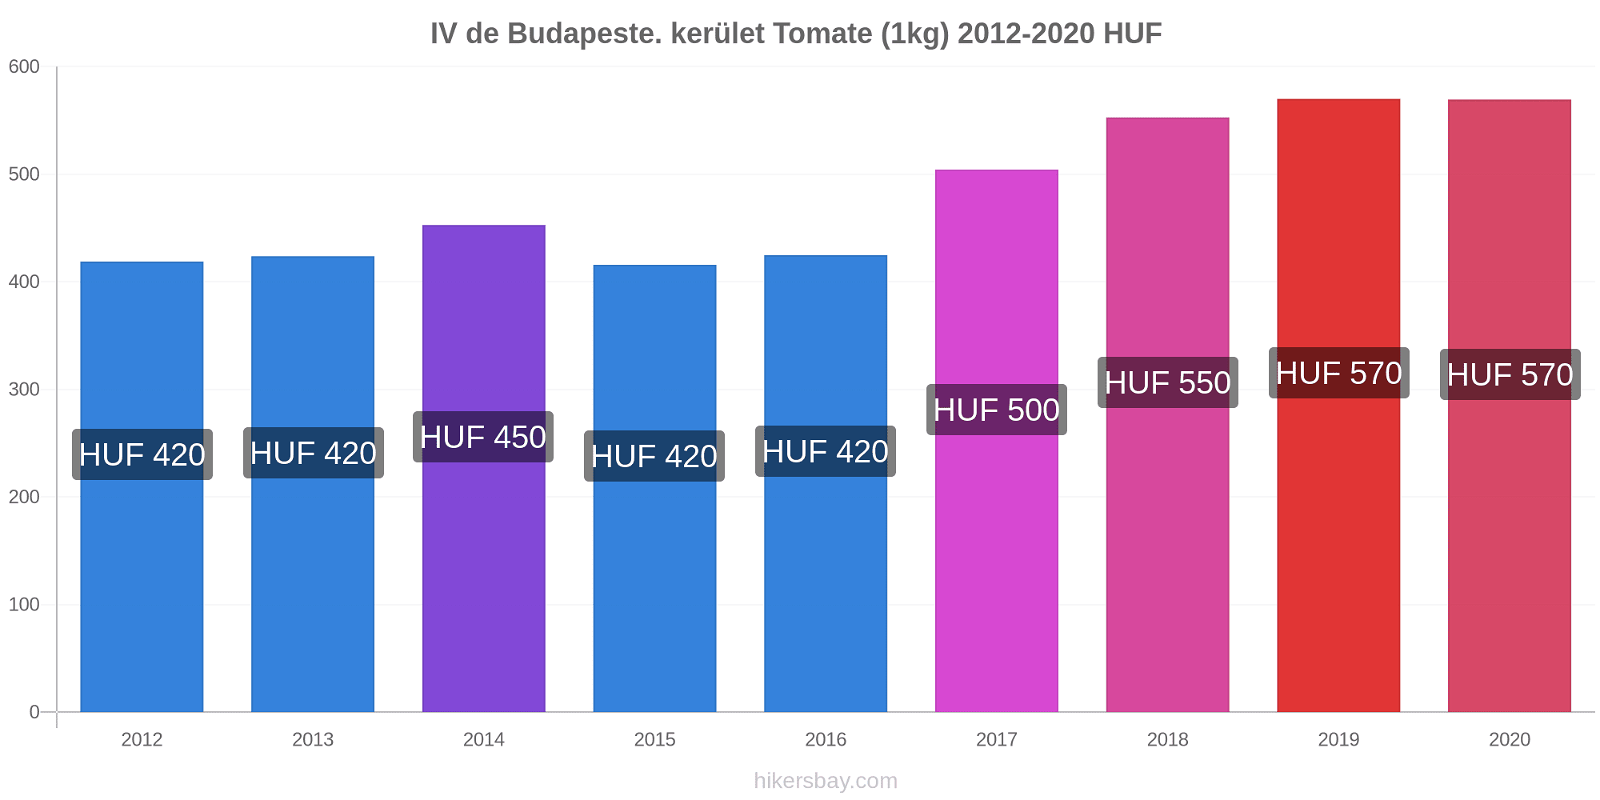 IV de Budapeste. kerület variação de preço Tomate (1kg) hikersbay.com